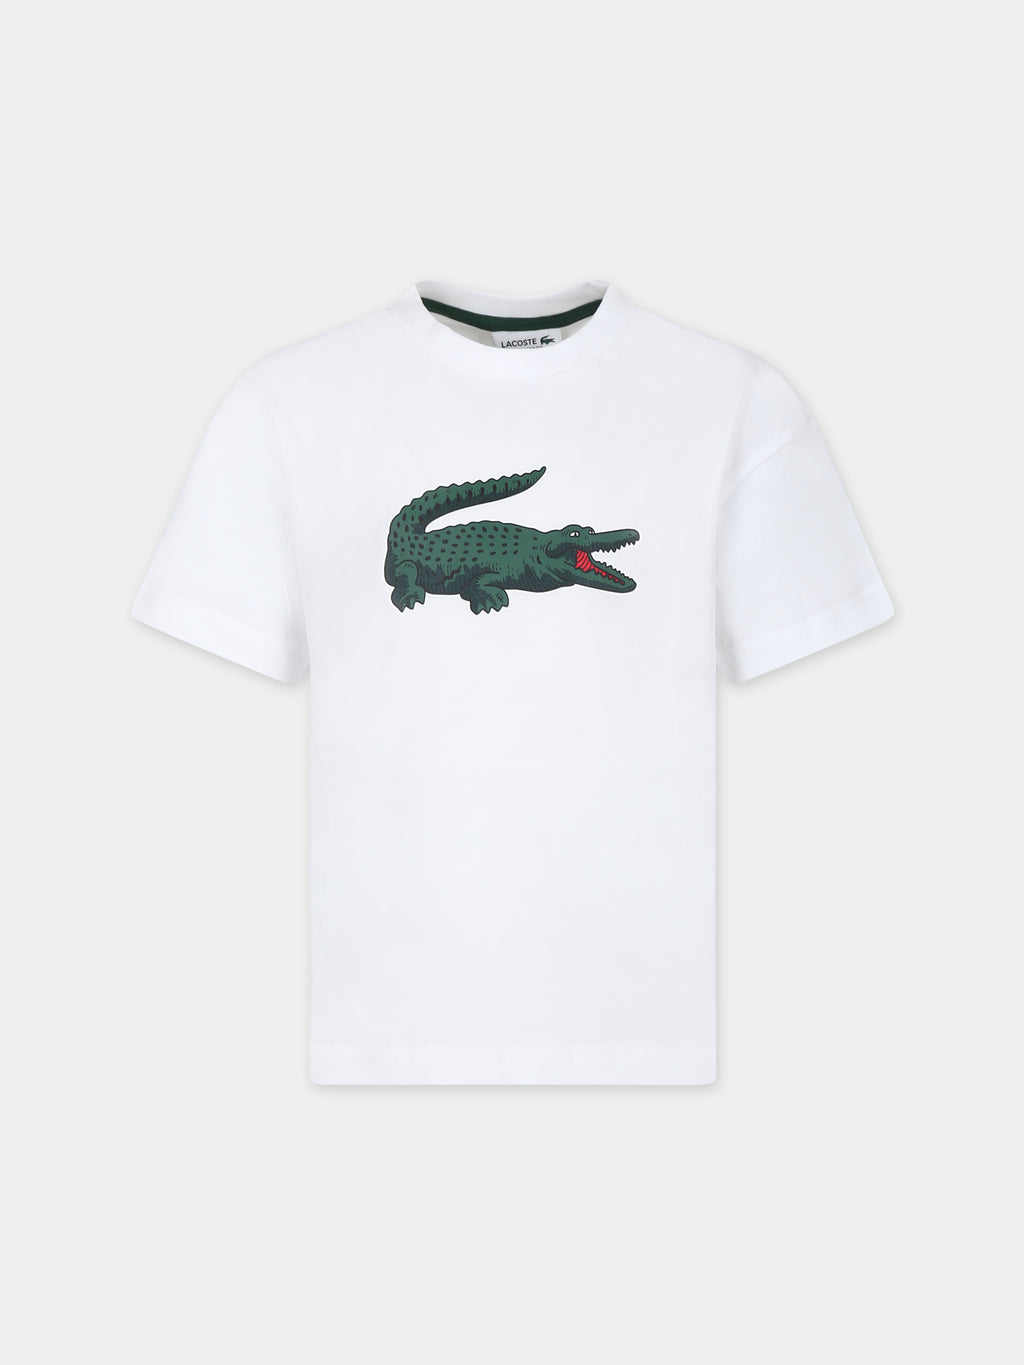 T-shirt blanc pour garçon avec crocodile